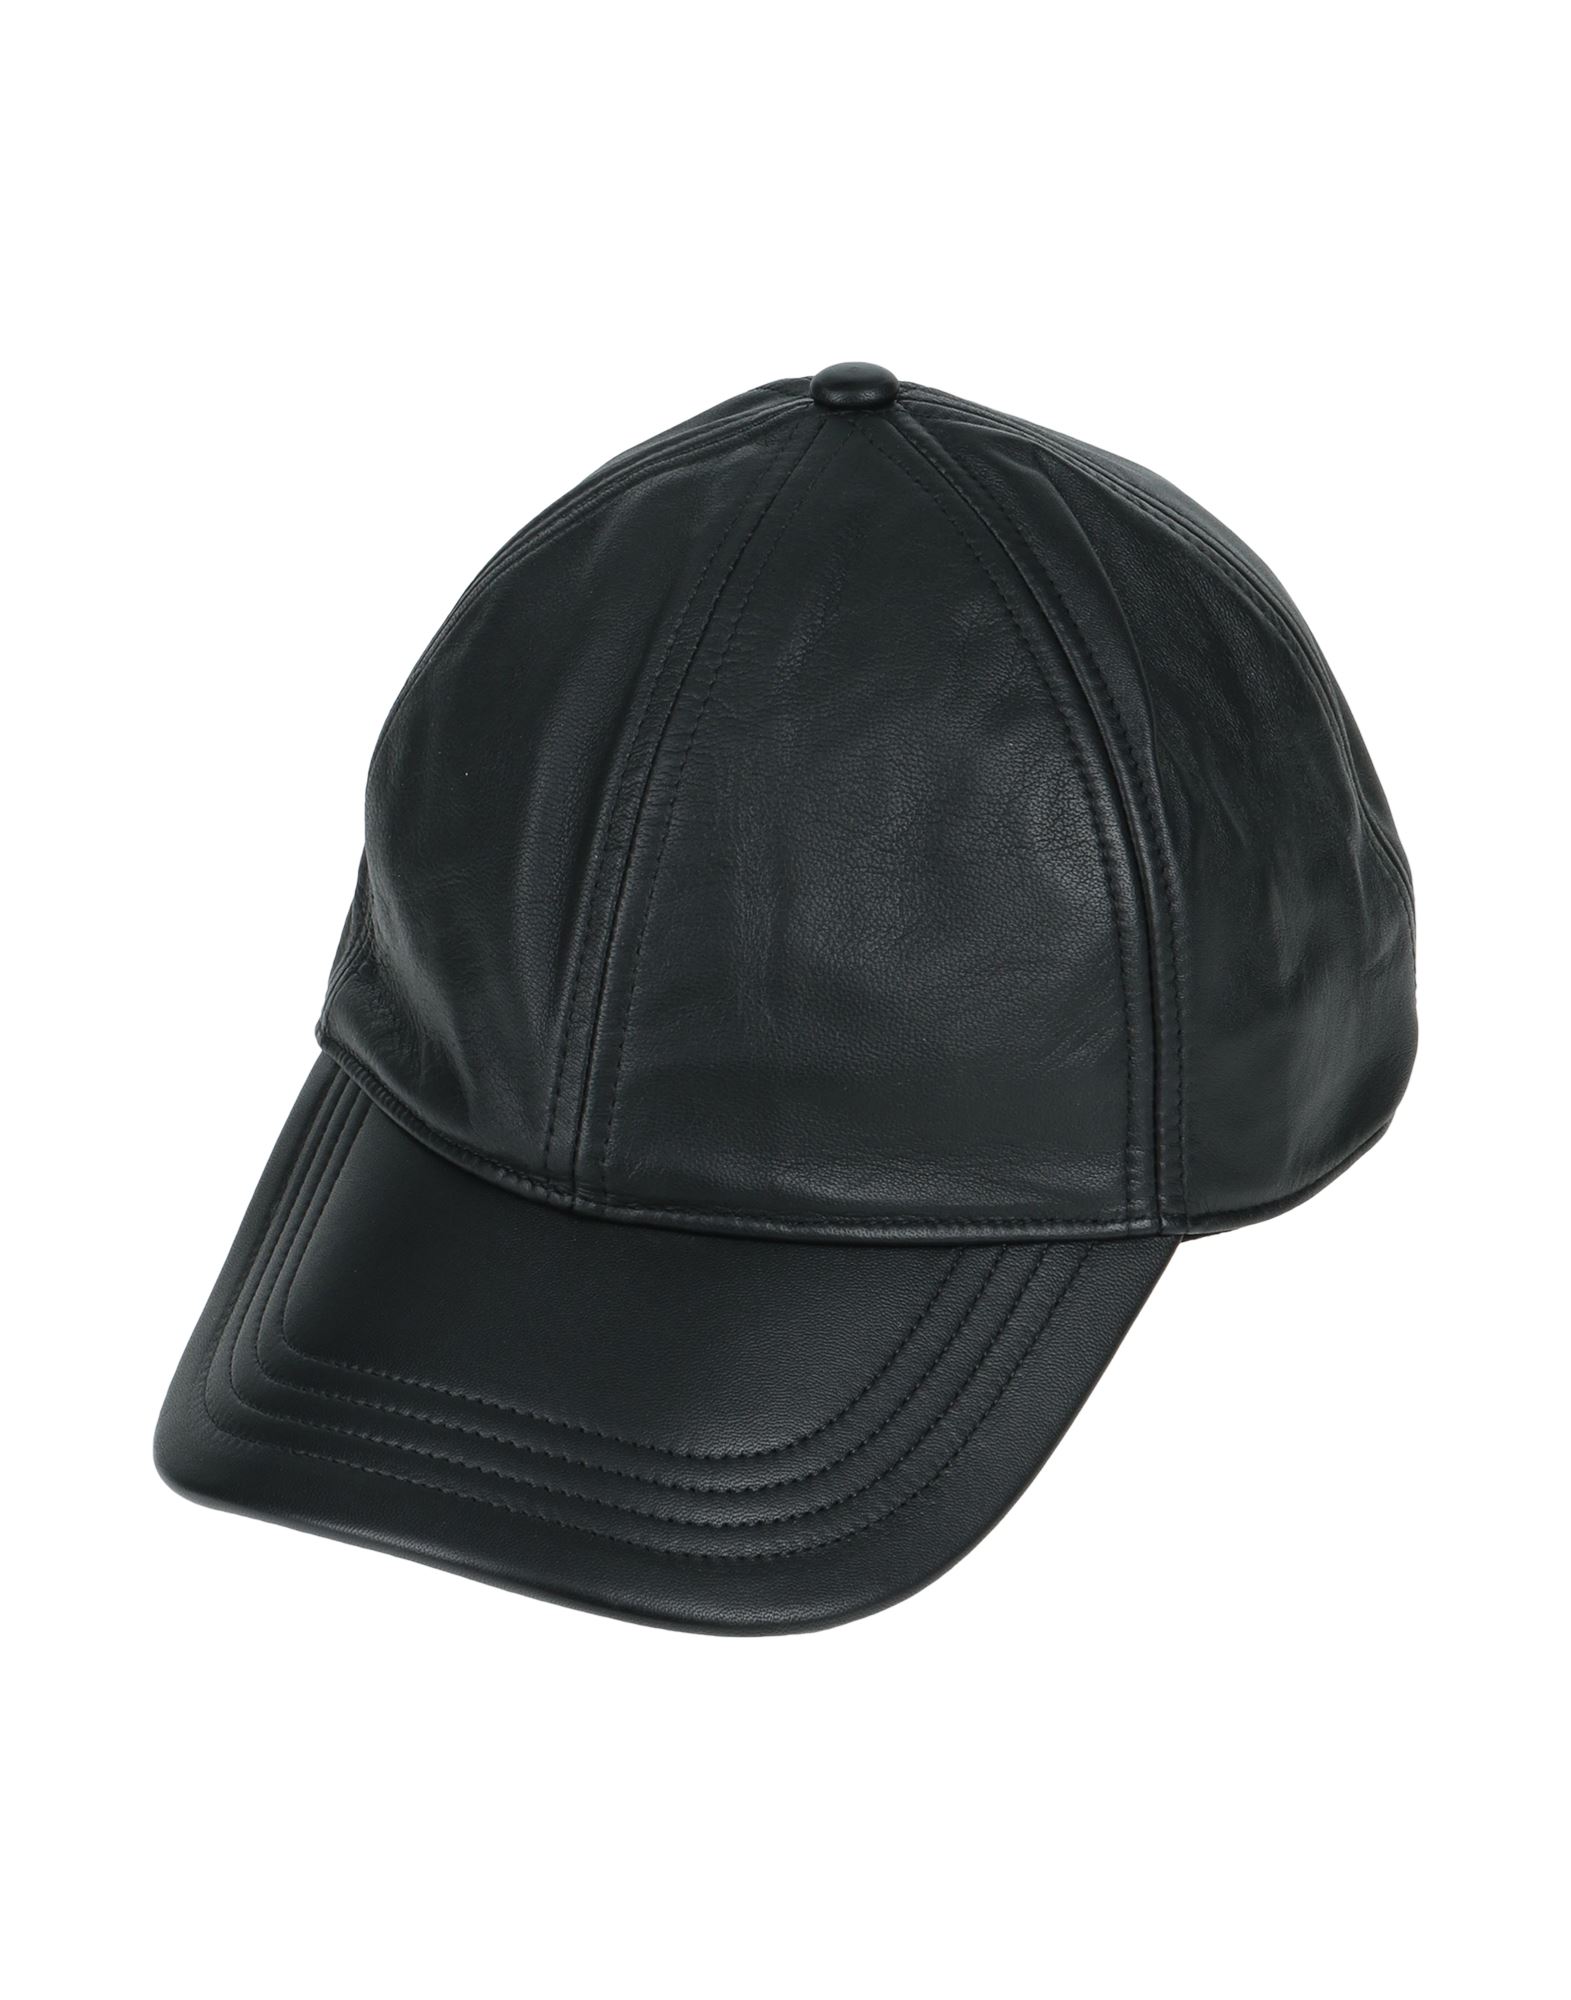 Diesel Hats In Black | ModeSens